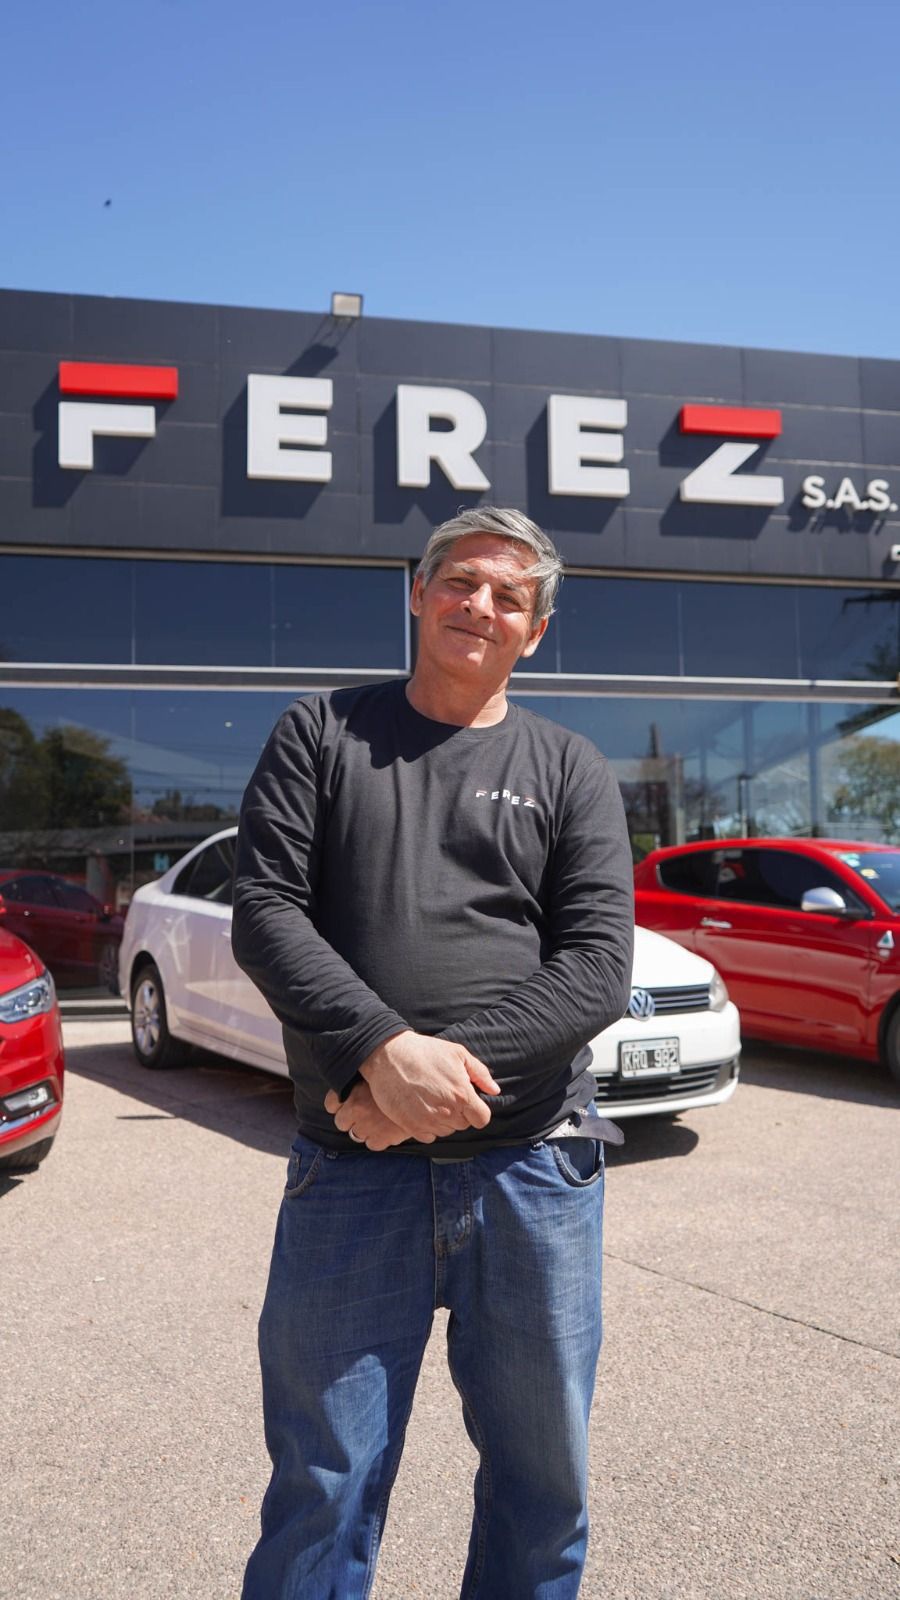 Tras su viralización, la concesionaria Ferez llamó a Roberto y lo terminó contratando.